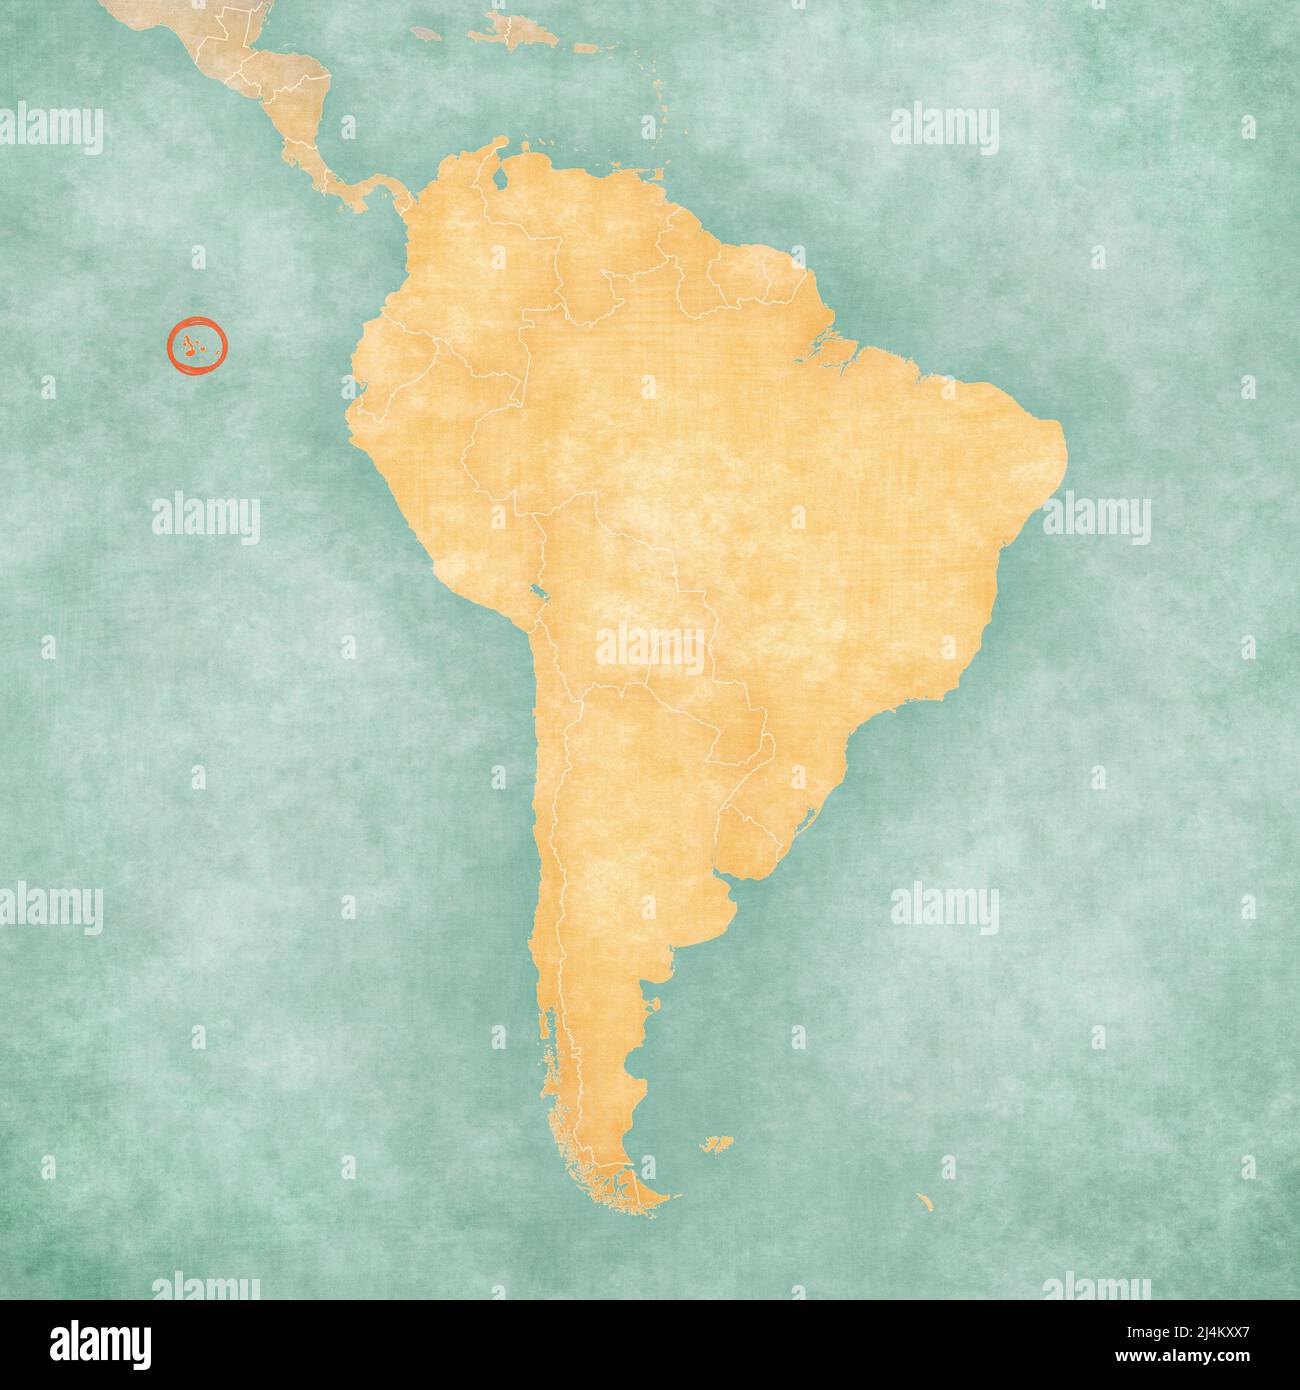 Isole Galapagos sulla mappa del Sud America in morbido grunge e stile vintage, come carta vecchia con pittura acquerello. Foto Stock